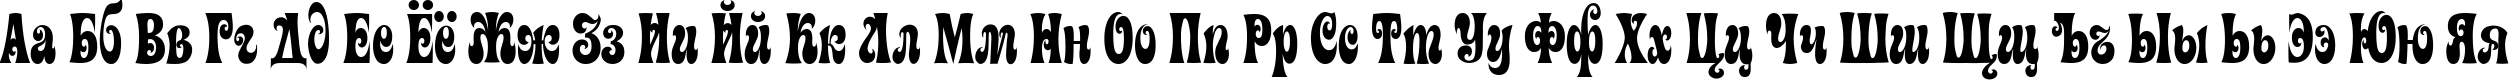 Пример написания русского алфавита шрифтом Artemon